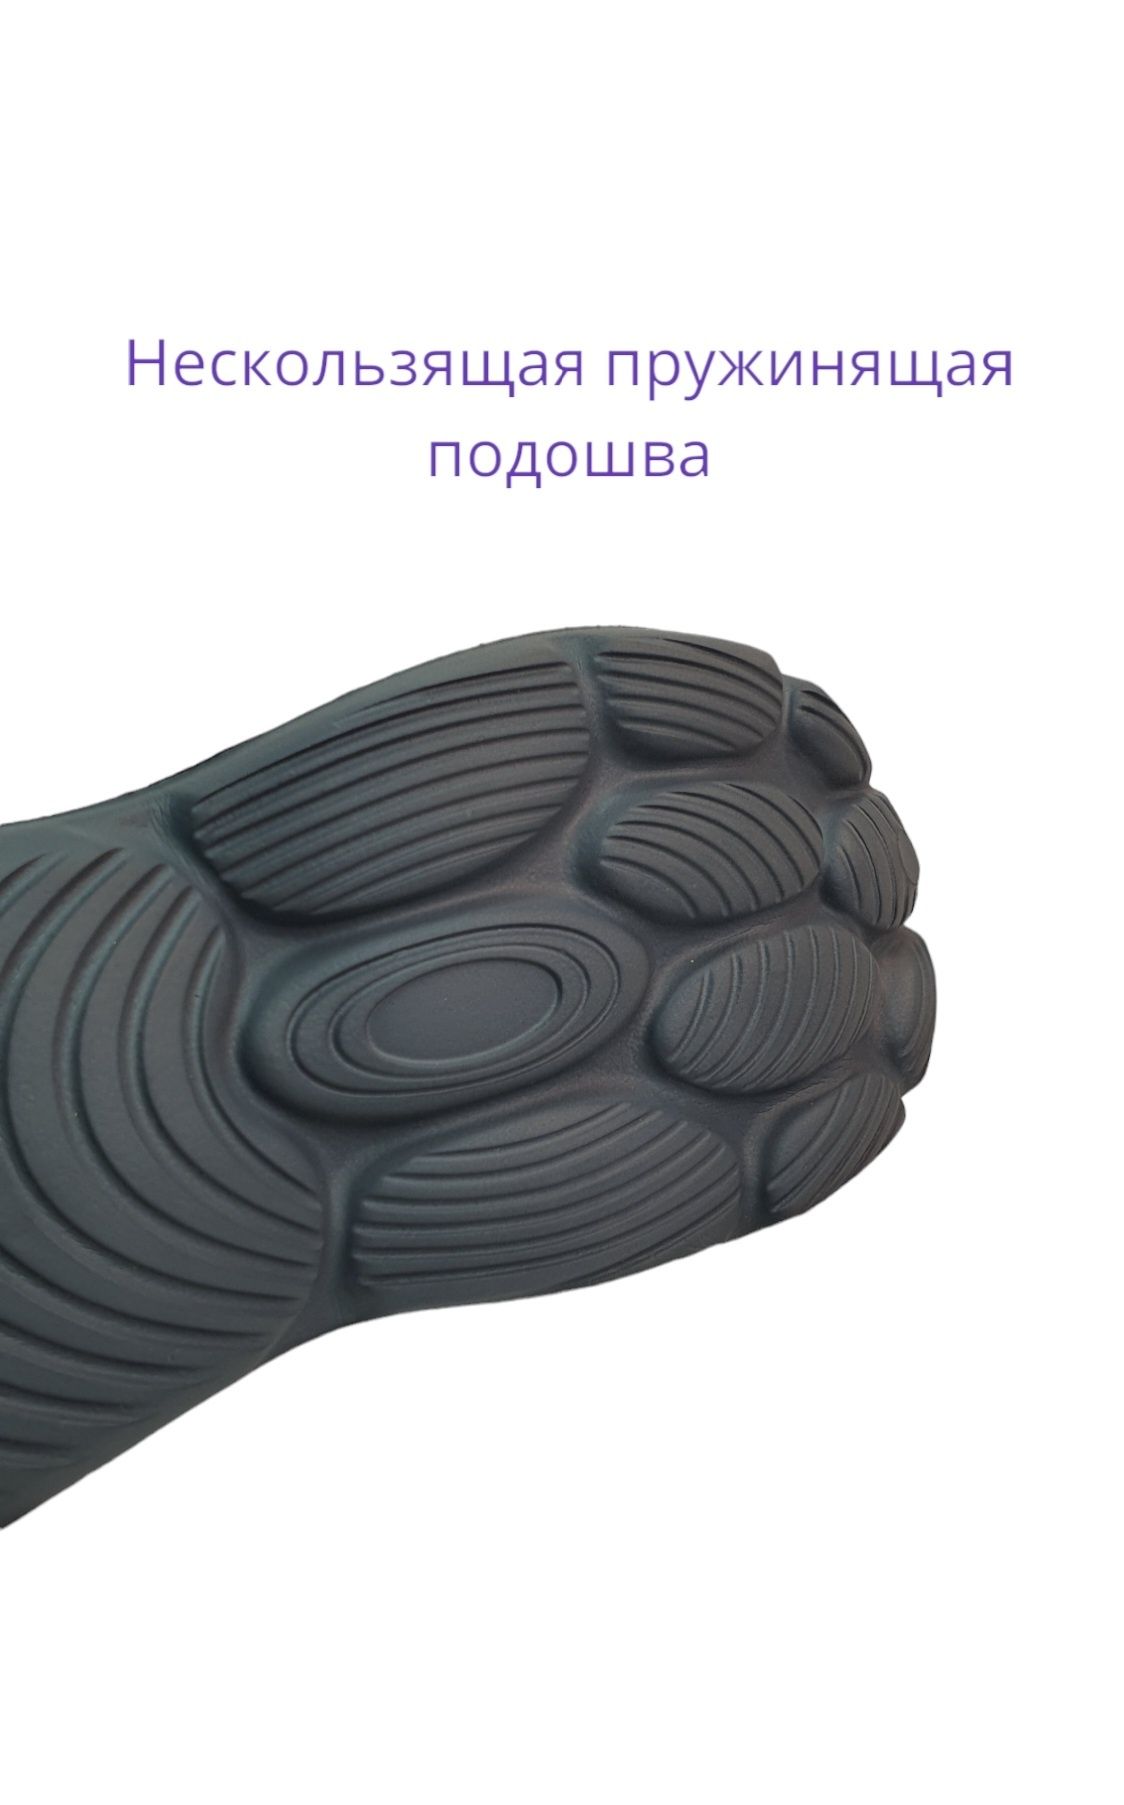 Слайдеры кроссовки 42 размер супермягкие